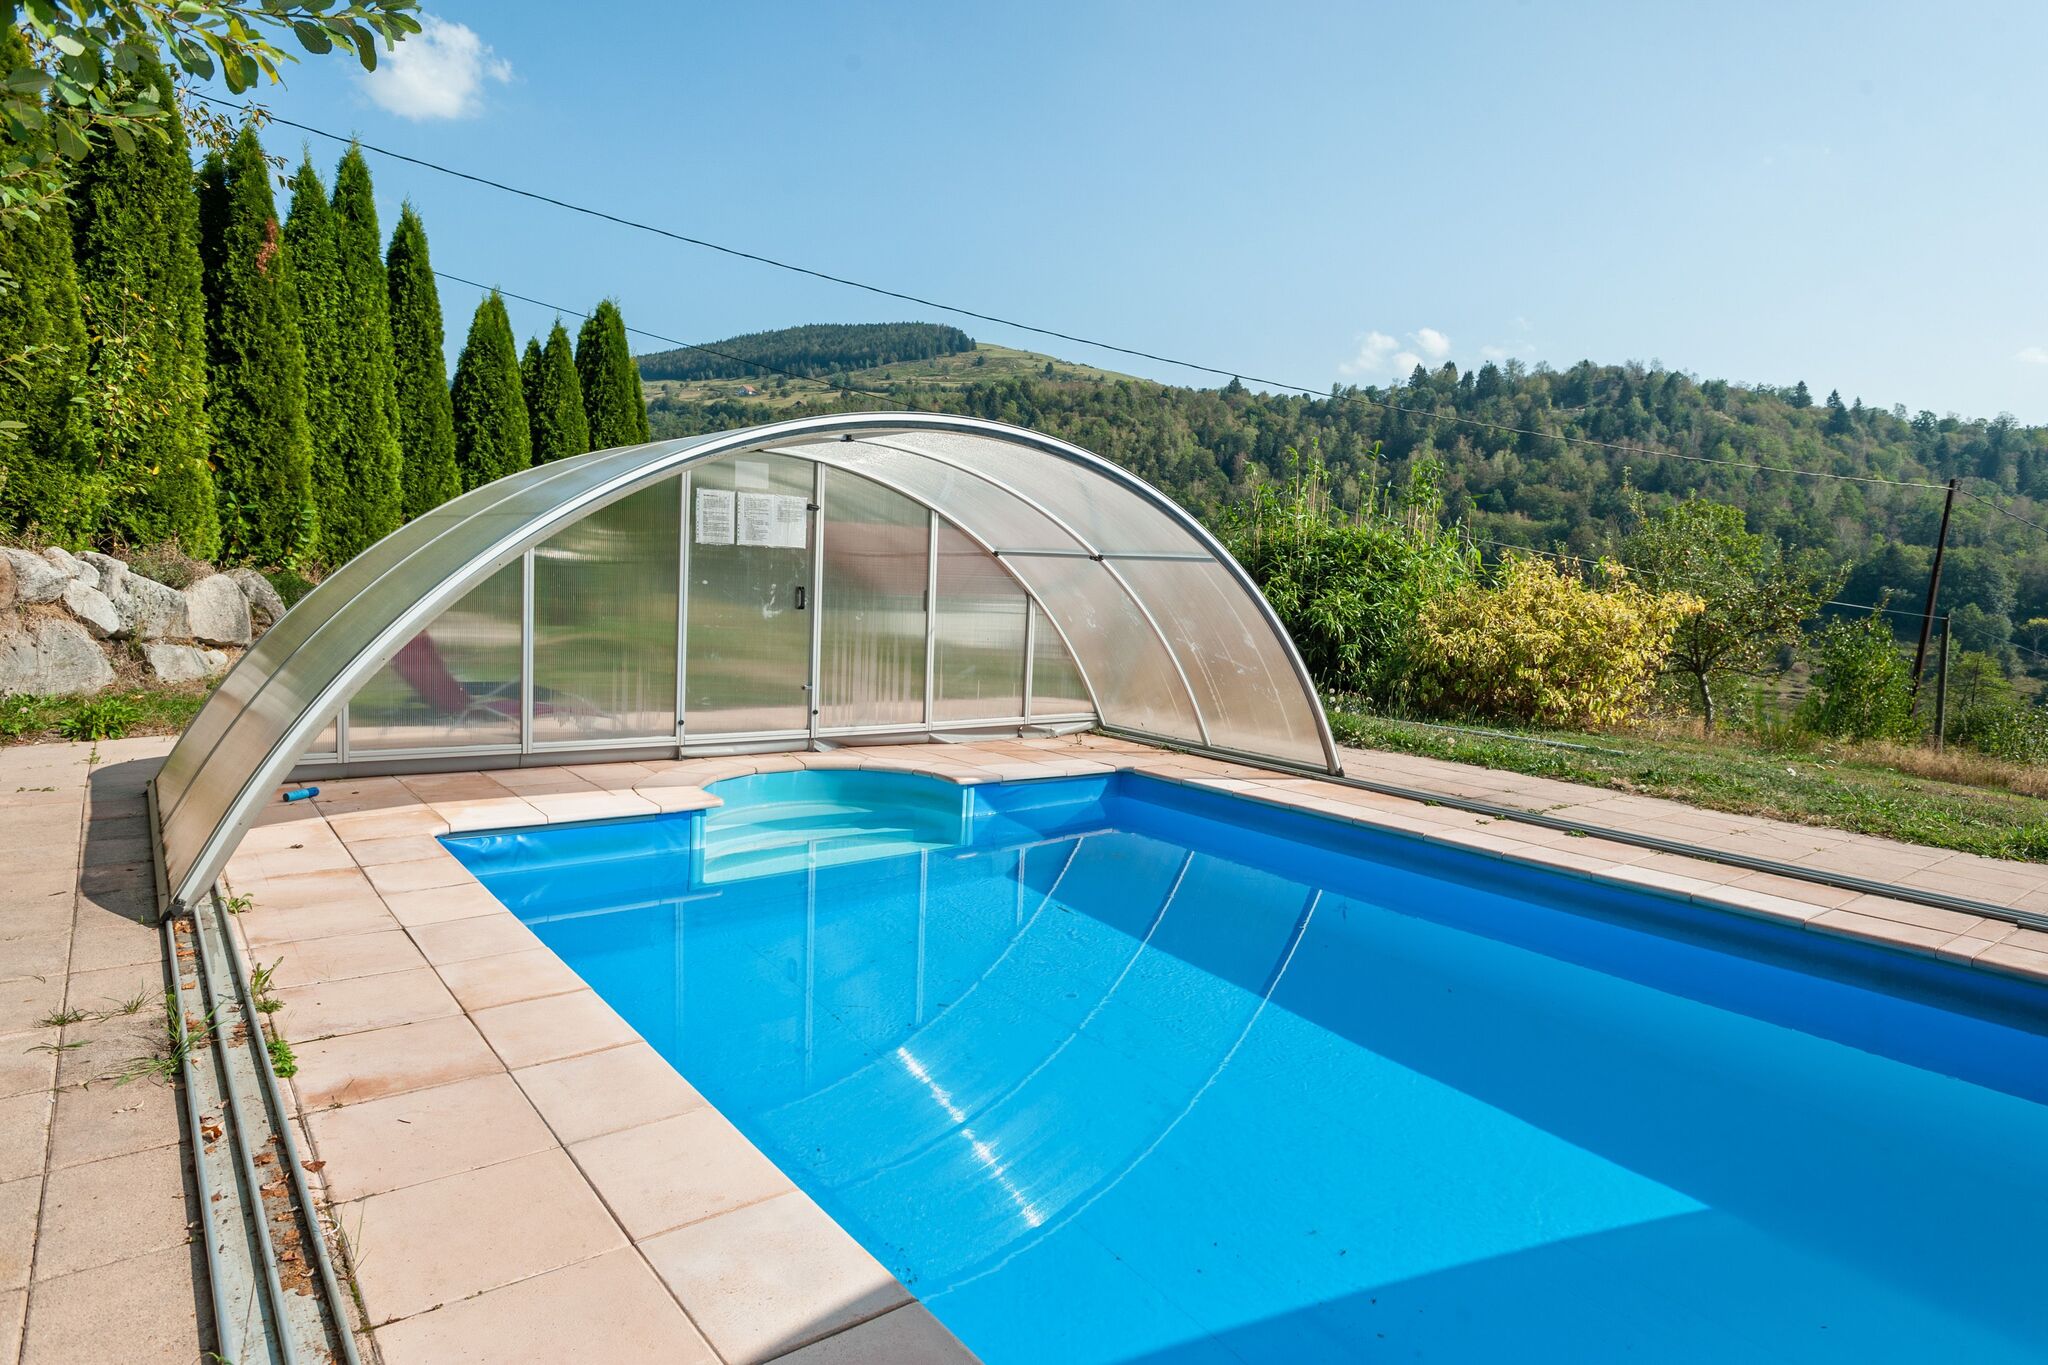 Prachtig modern chalet nabij La Bresse, verwarmd zwembad, rolstoel toegangkelijk